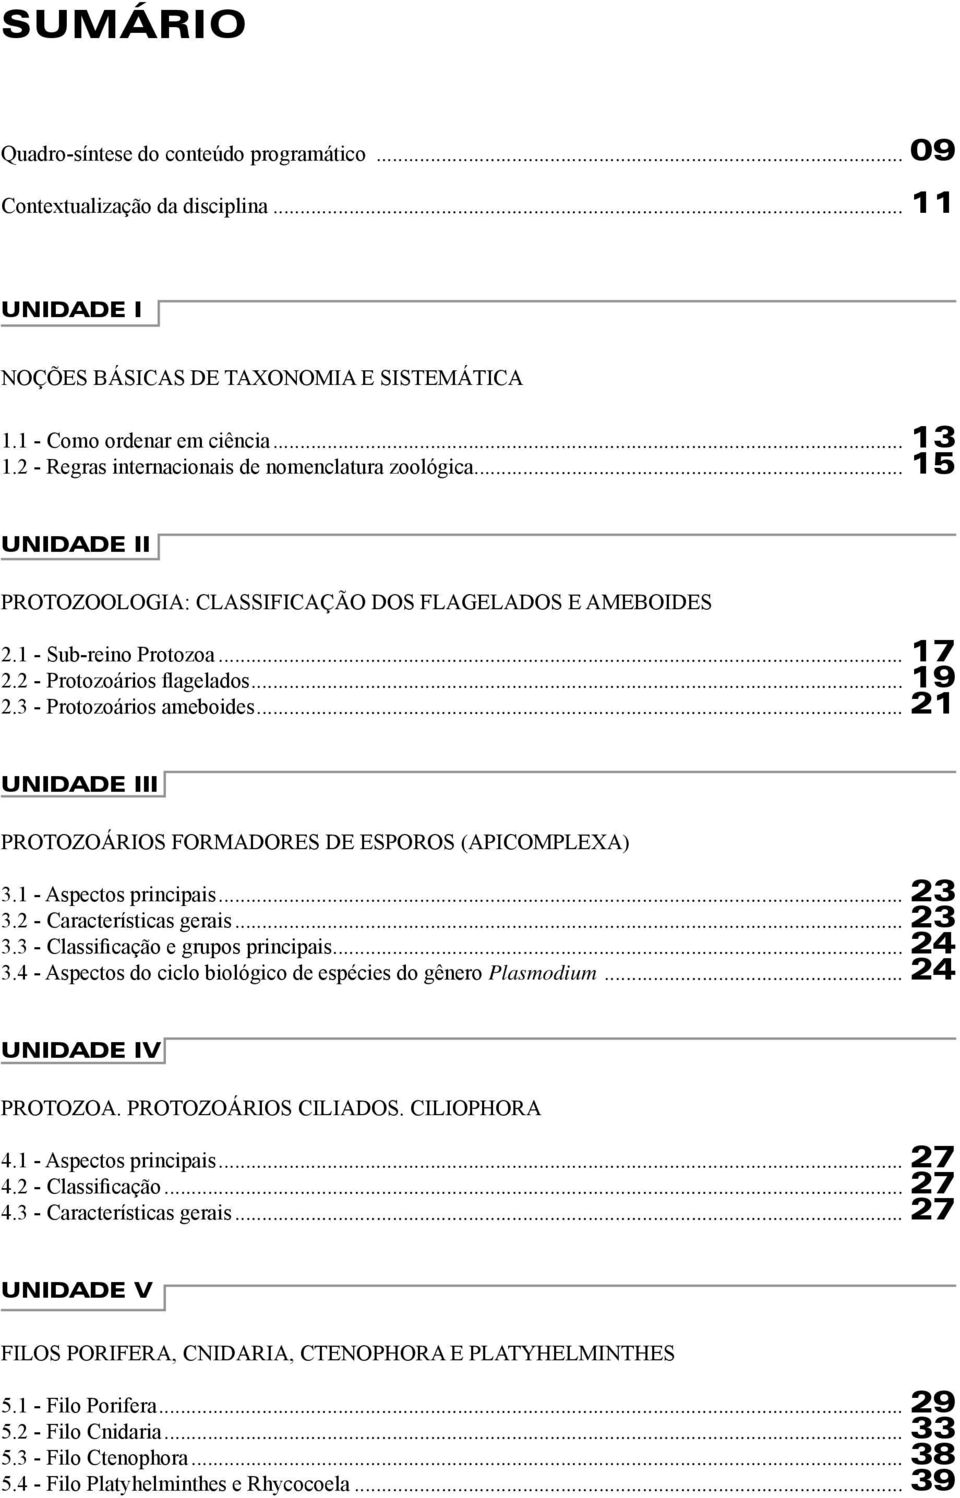 3 - Protozoários ameboides... 21 UNIDADE III PROTOZOÁRIOS FORMADORES DE ESPOROS (APICOMPLEXA) 3.1 - Aspectos principais... 23 3.2 - Características gerais... 23 3.3 - Classificação e grupos principais.